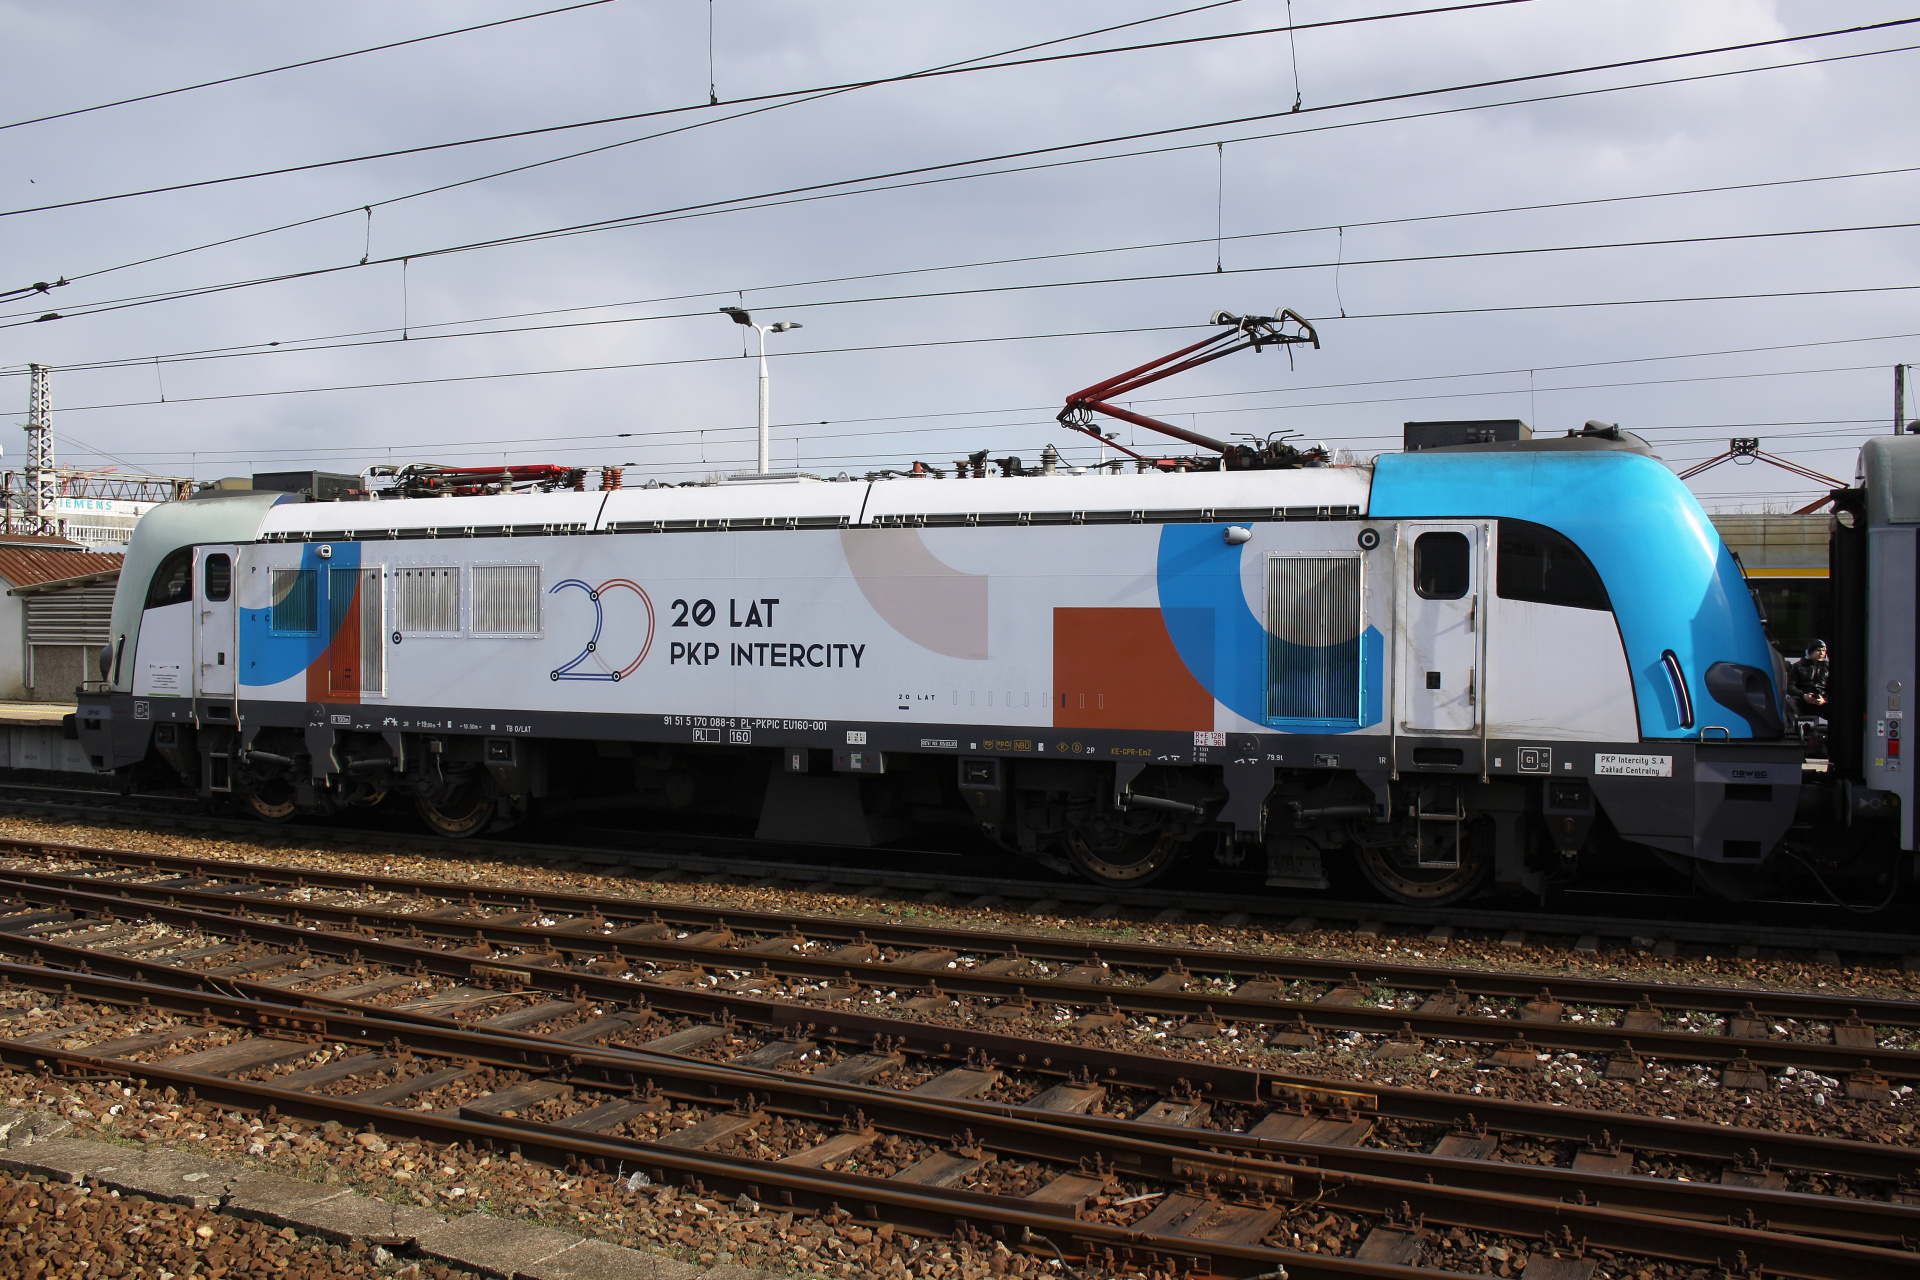 E4DCU EU160-001 (malatura 20 lat PKP Intercity) (Pojazdy » Pociągi i lokomotywy » Newag Griffin)